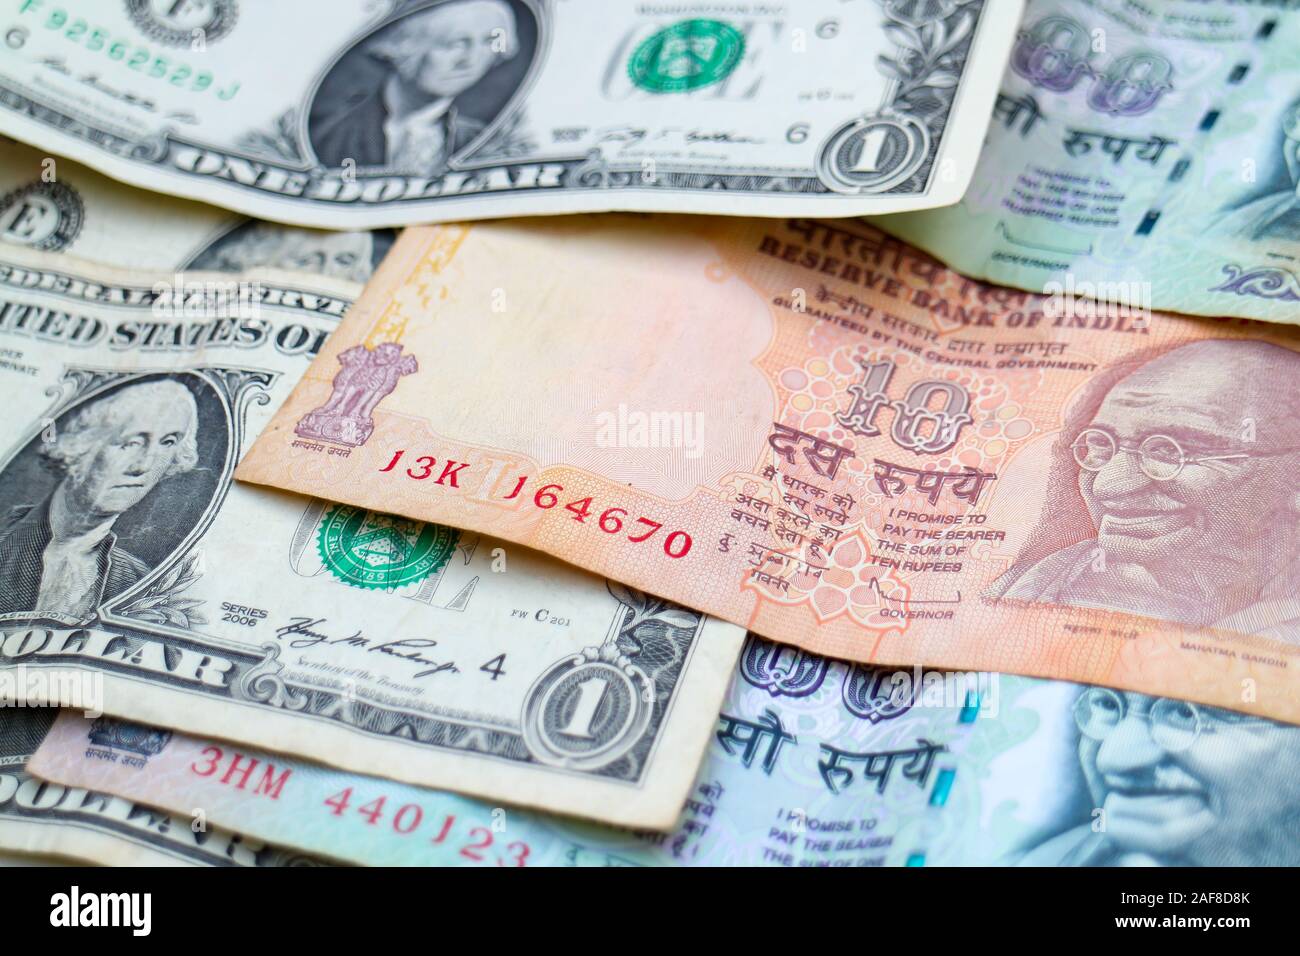 Las monedas de las principales economías del mundo en los Estados Unidos y la India: US Dólares y billetes de rupias indias. Foto de stock